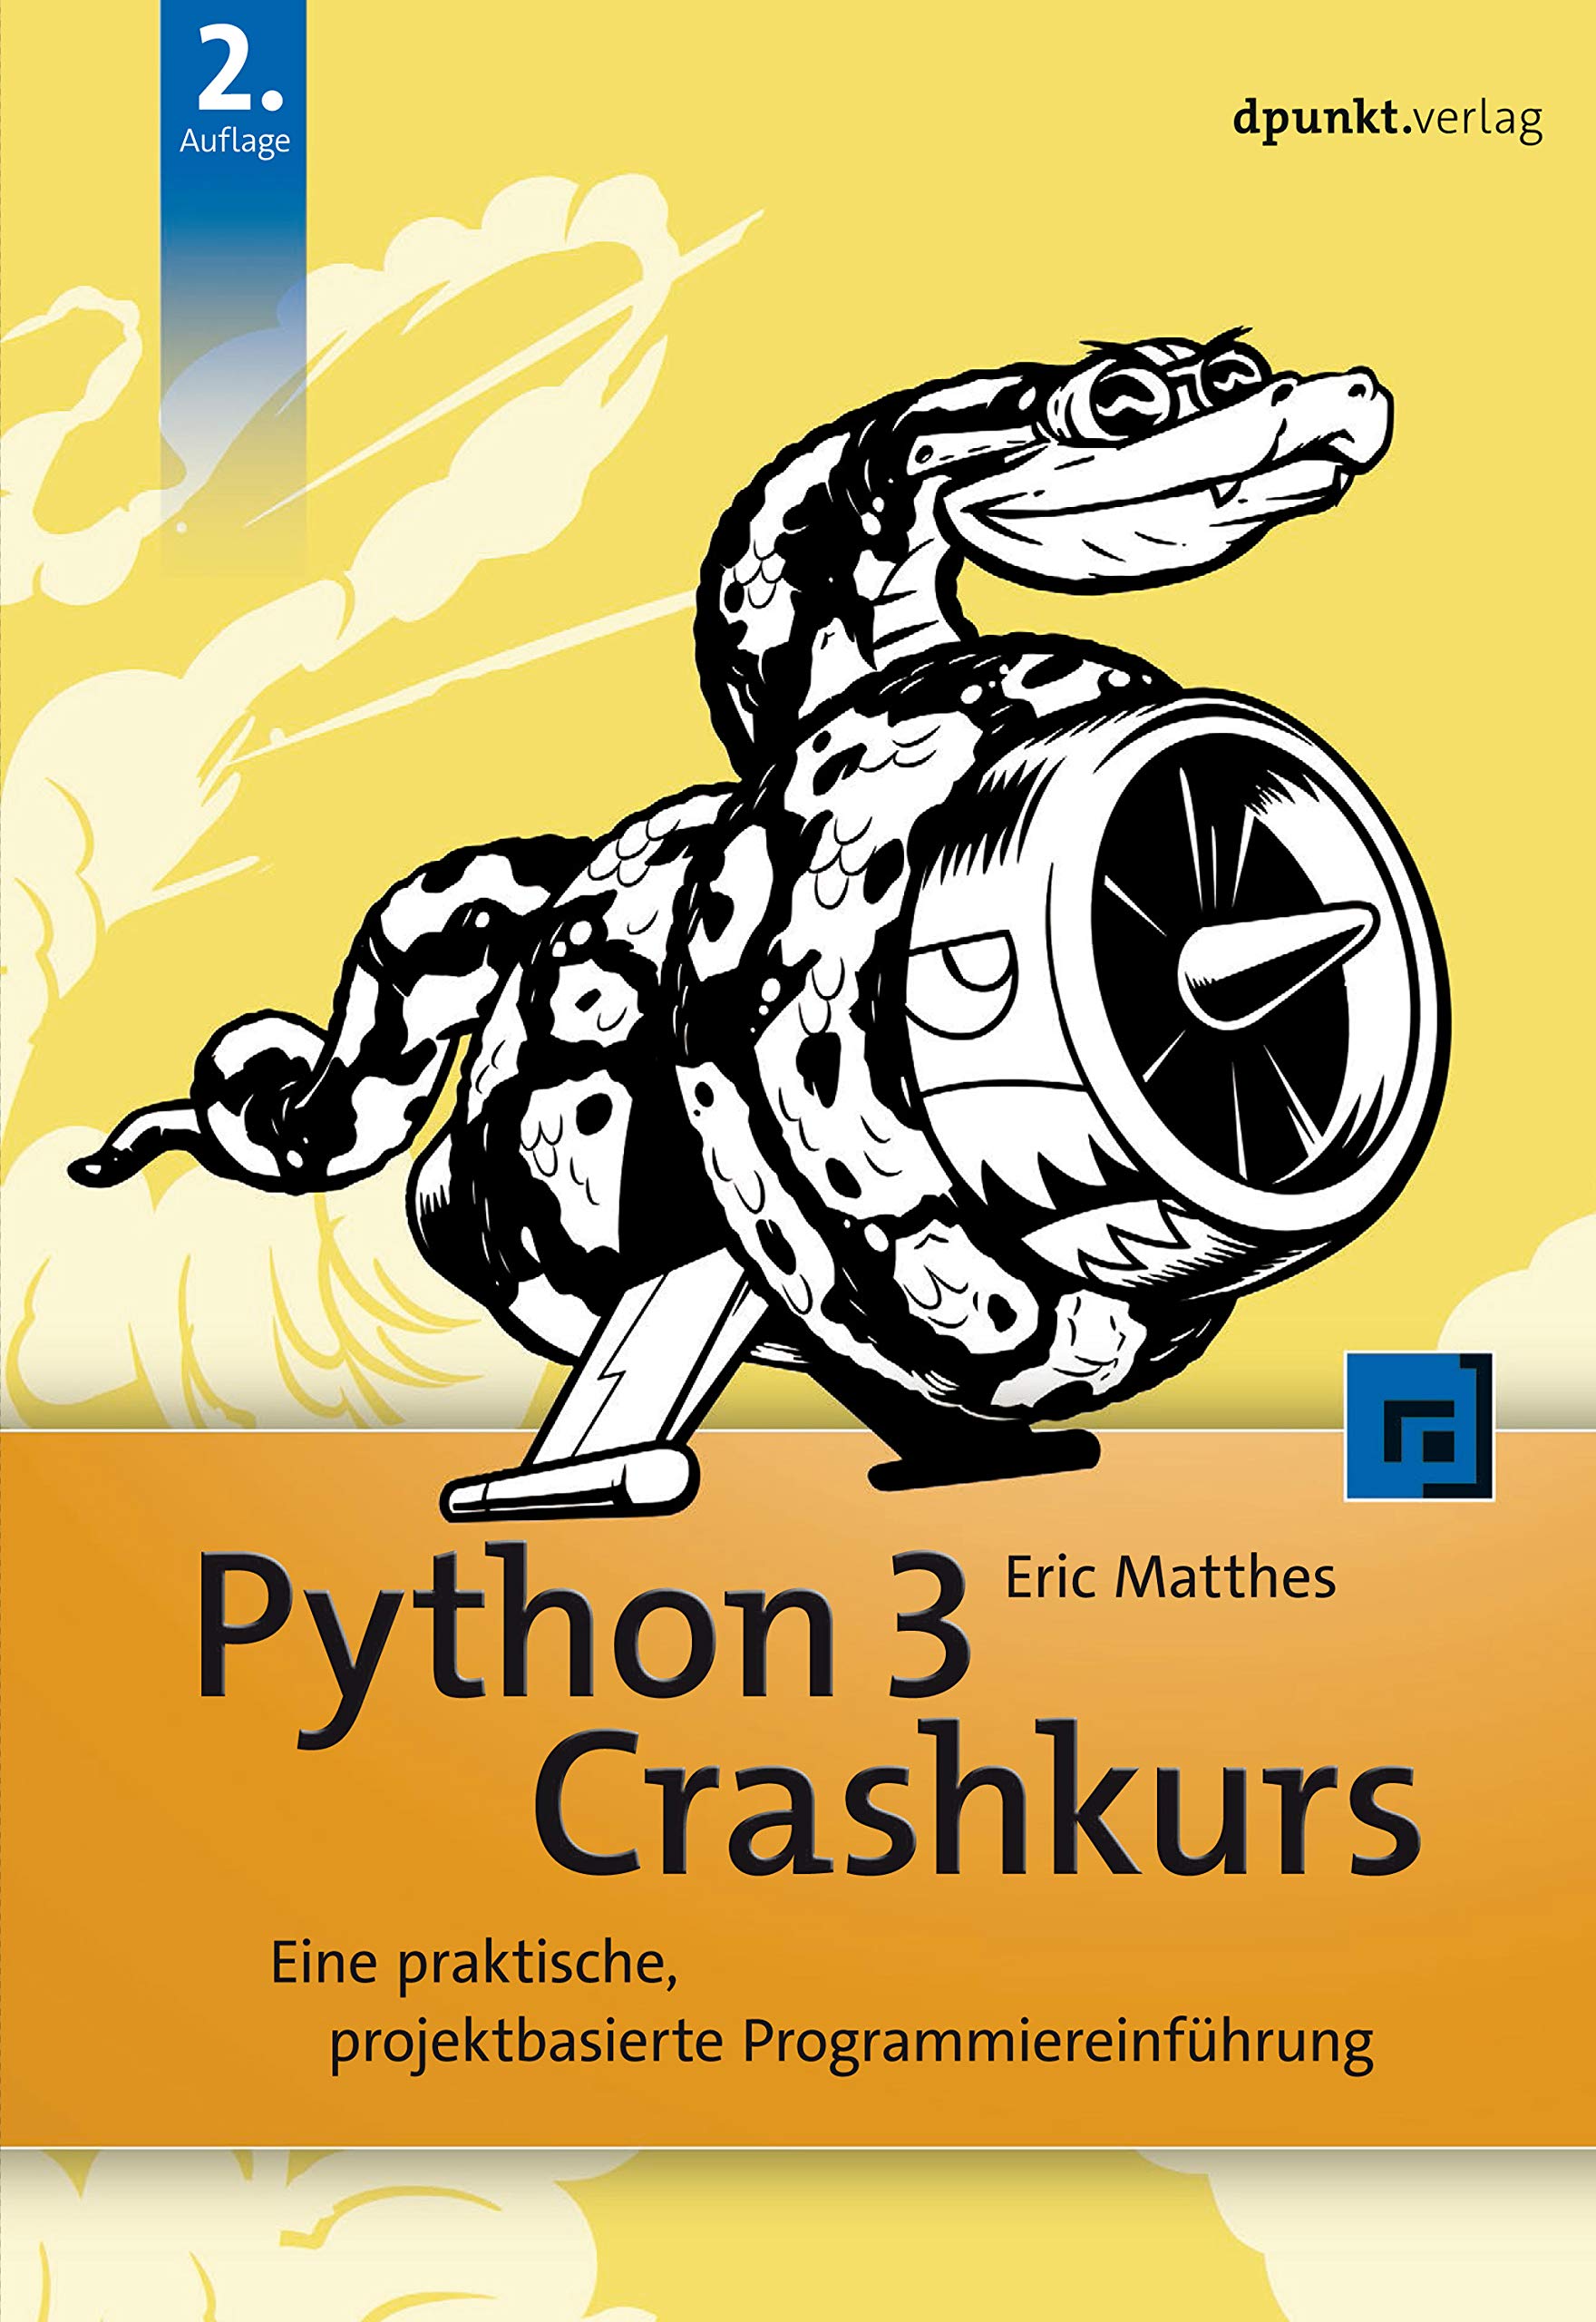 Python 3 Crashkurs: Eine praktische, projektbasierte Programmiereinführung (Programmieren mit Python) (German Edition)